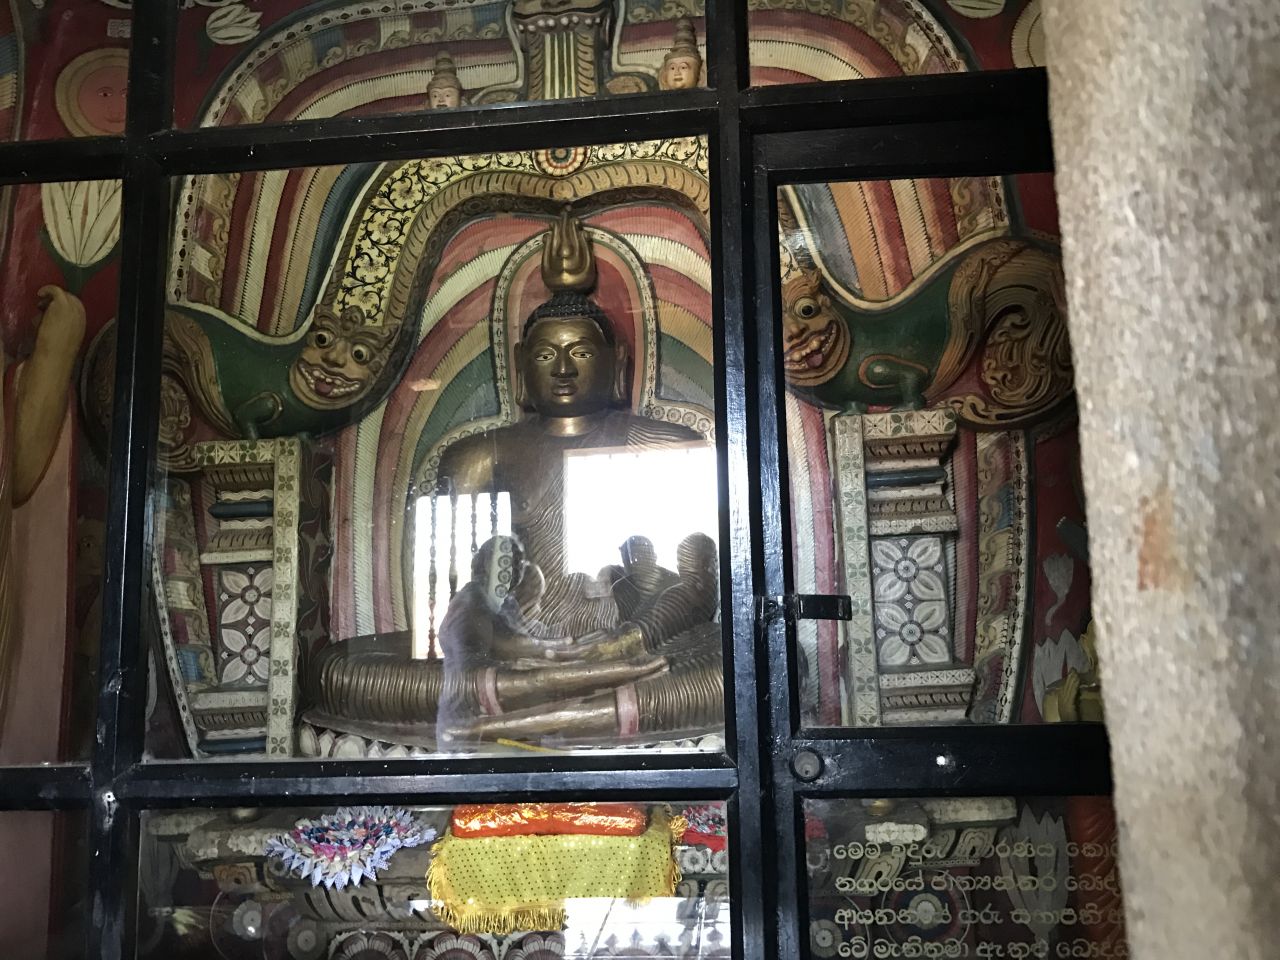 храм рядом с барельефами, внутри него тоже знаки МТ - Шри-Ланка 2017. Часть 2.